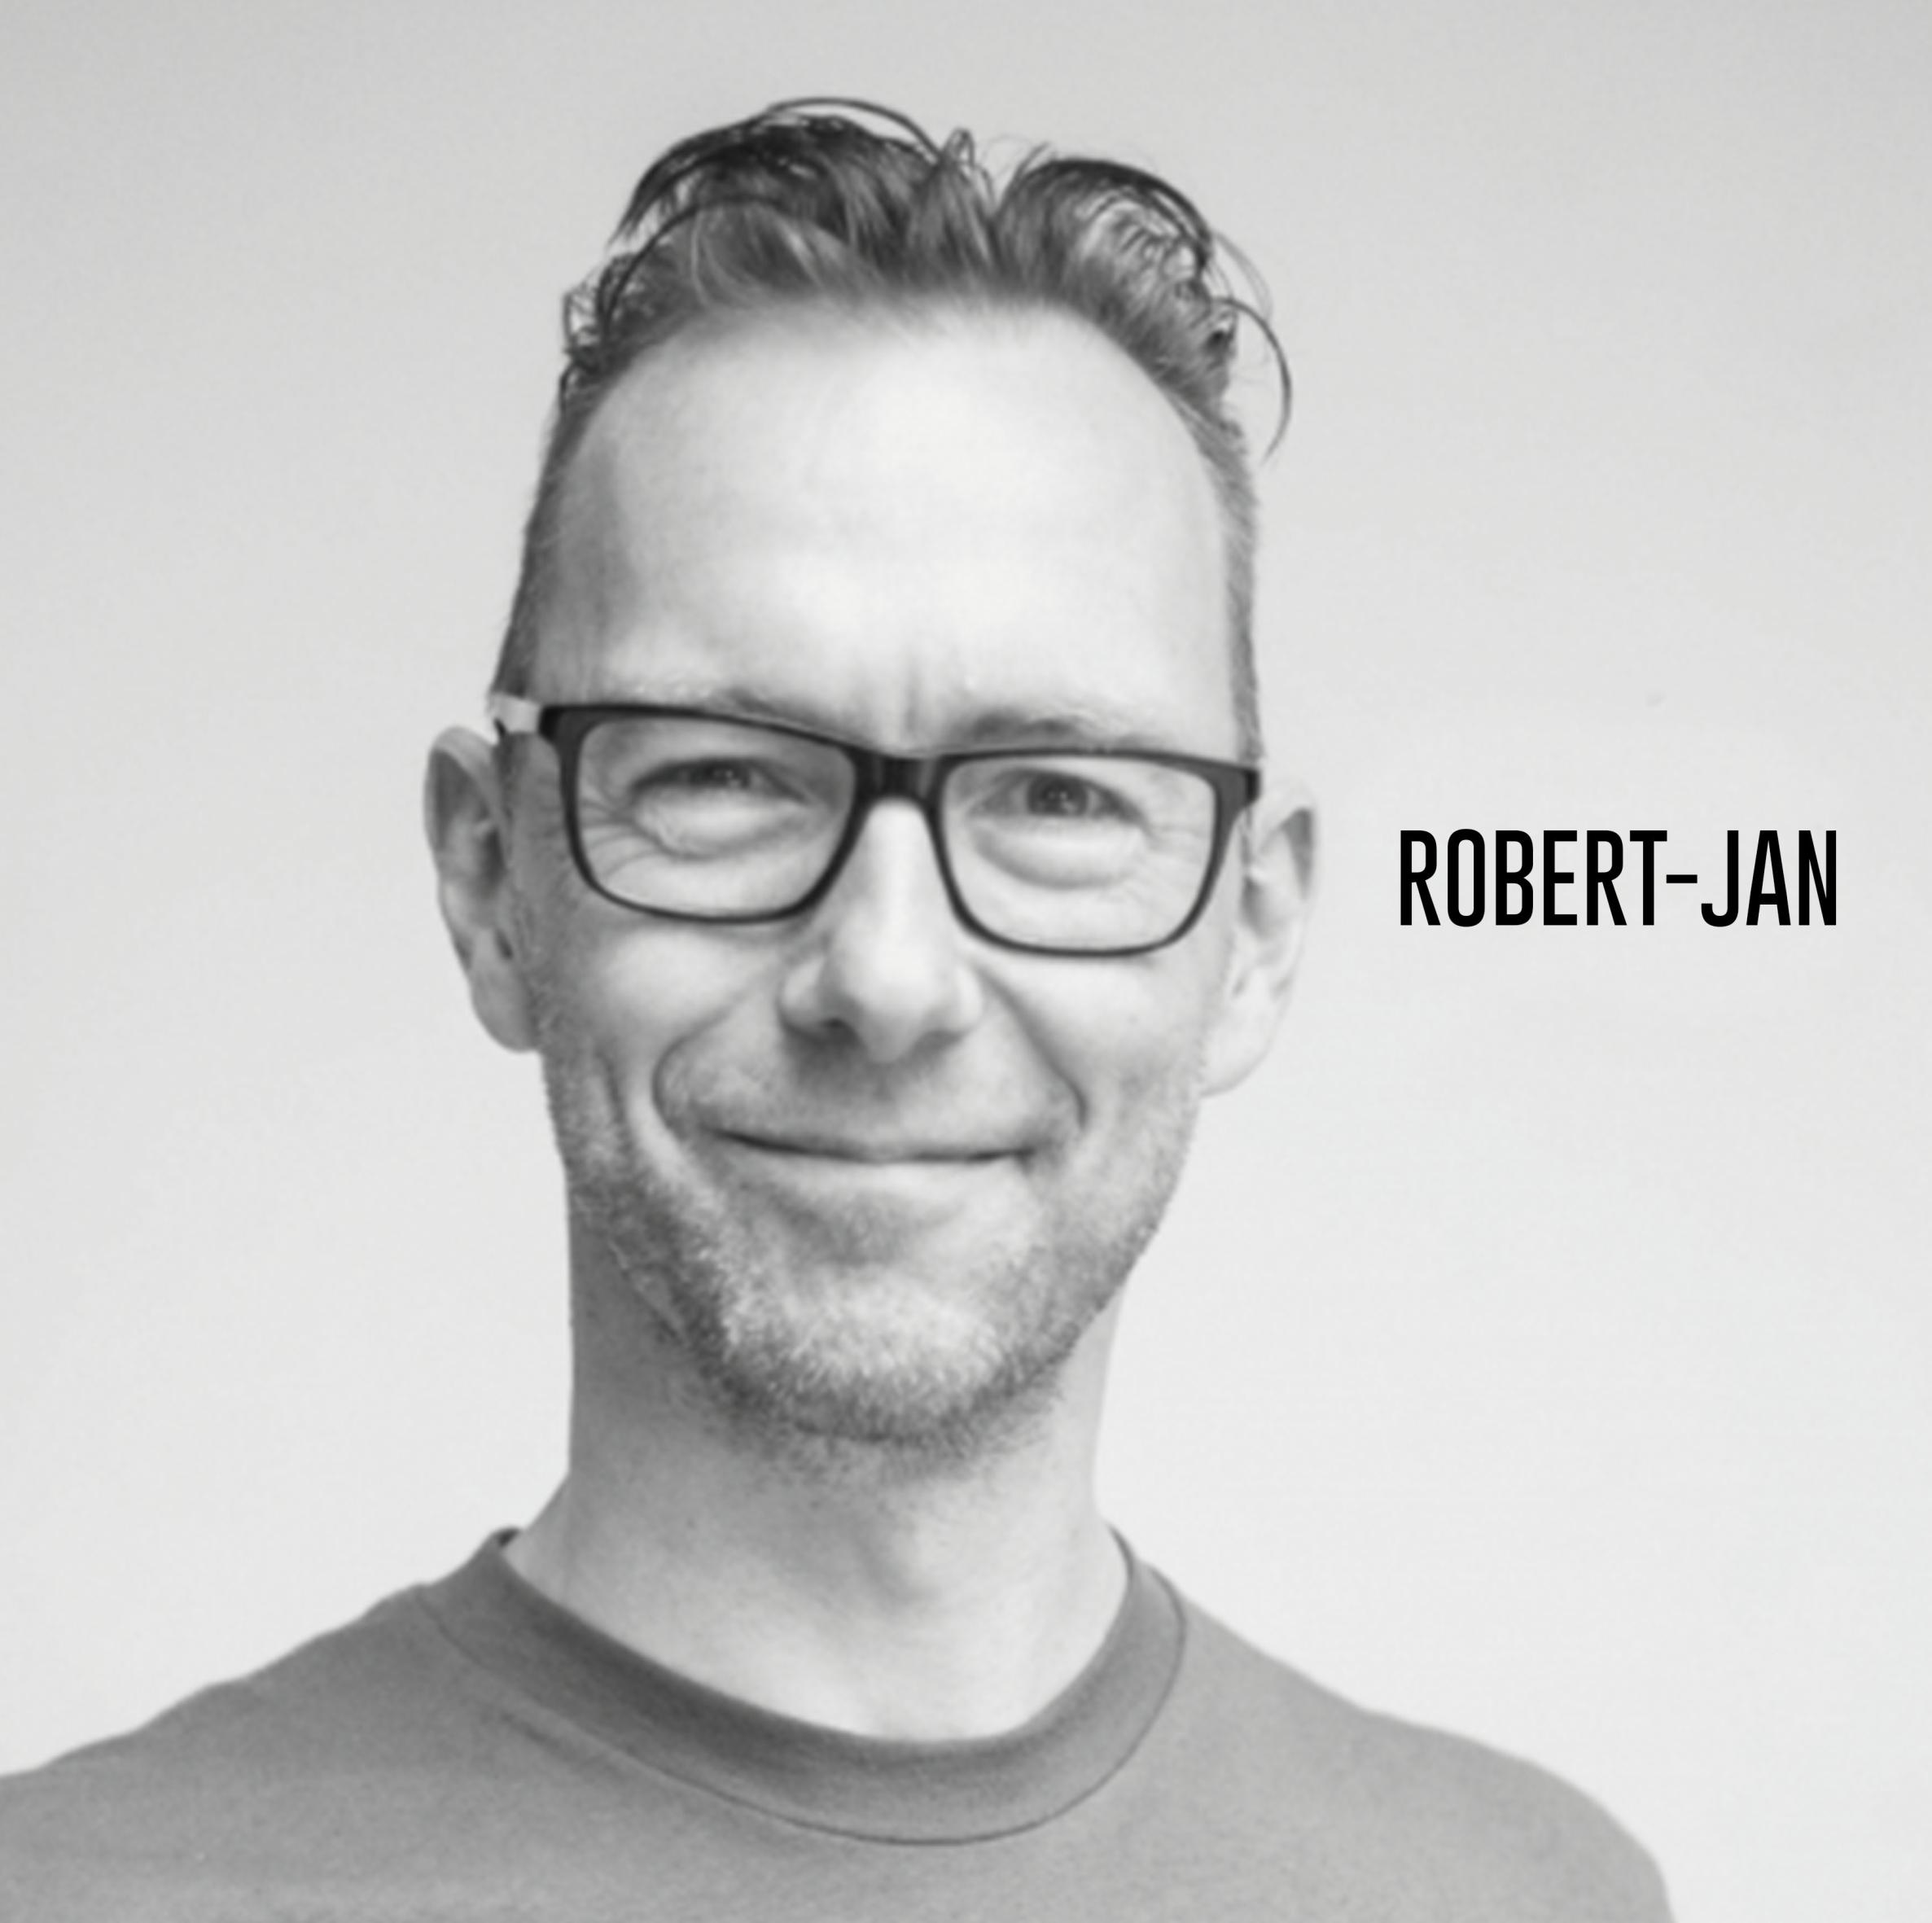 Musical Makers - Robert-Jan